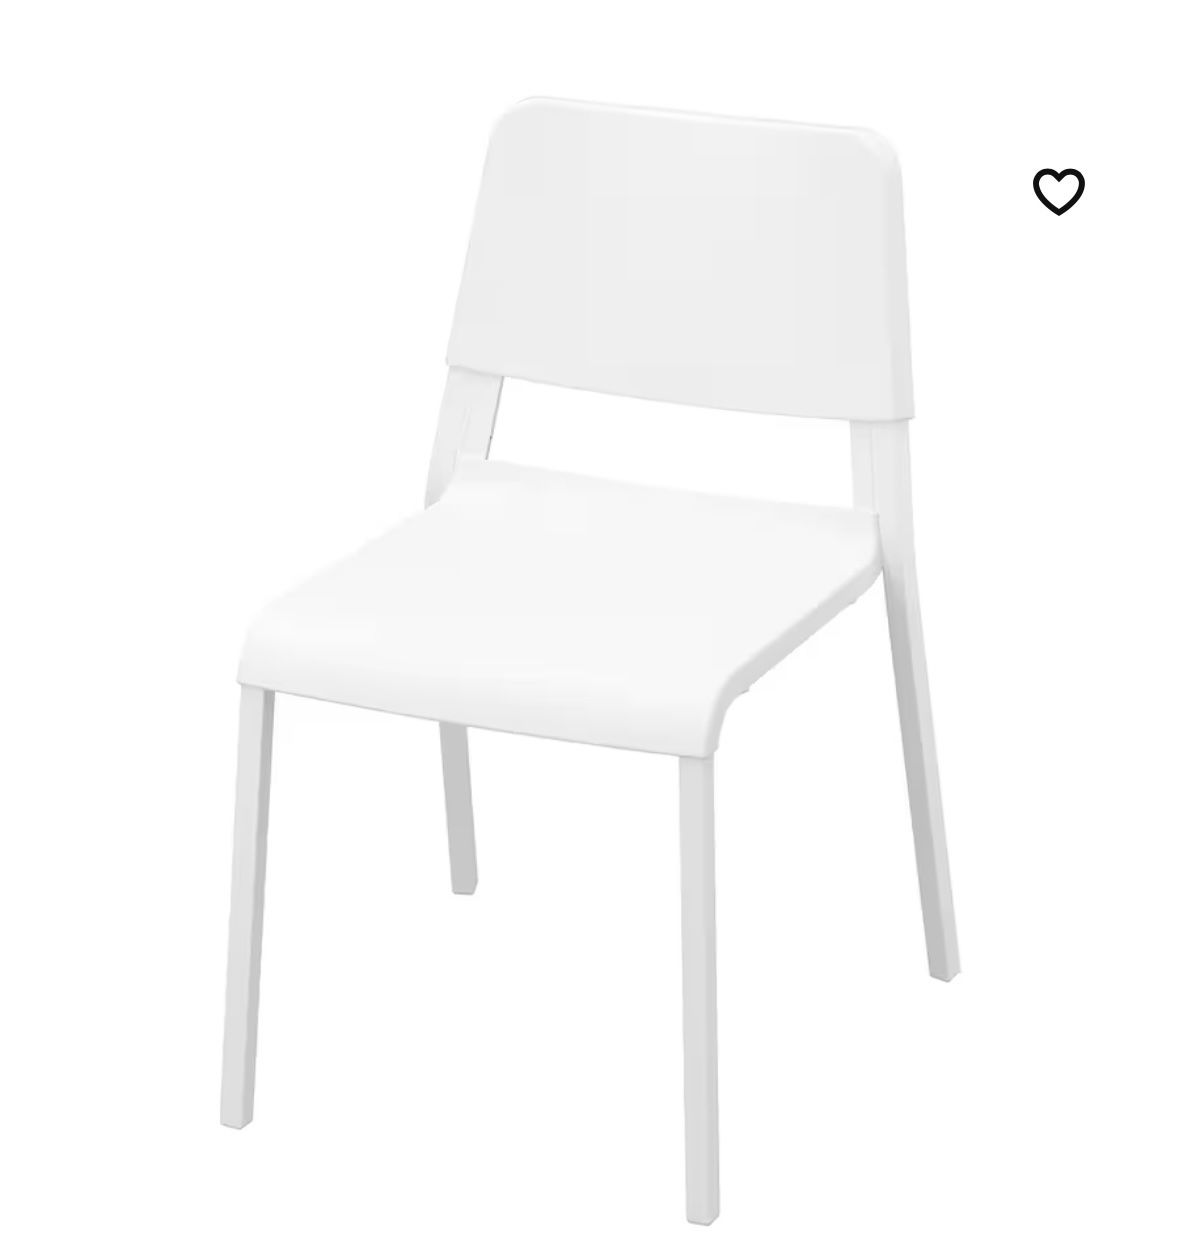 2 White Chairs 